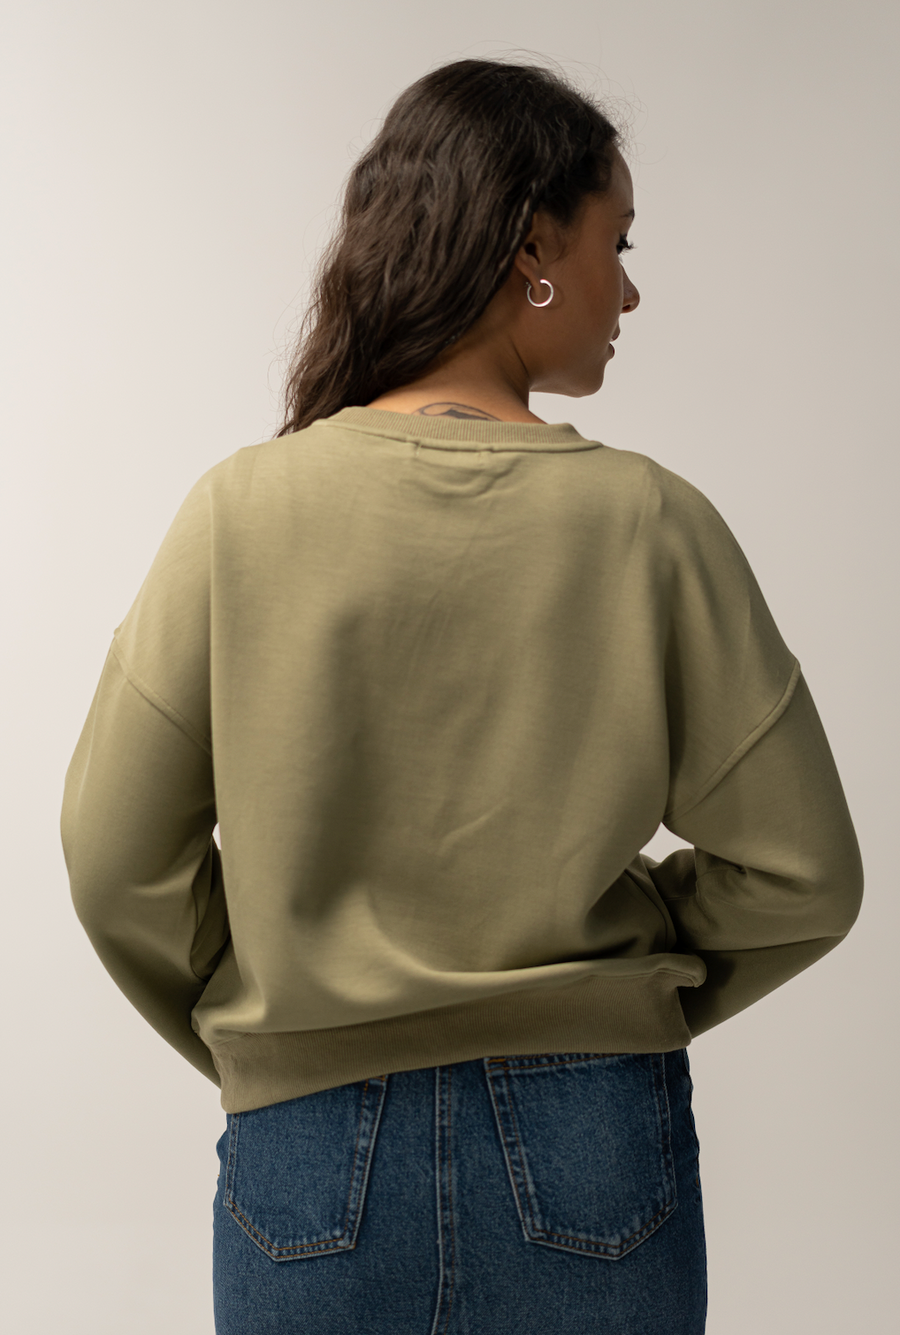 Crop sweater 1